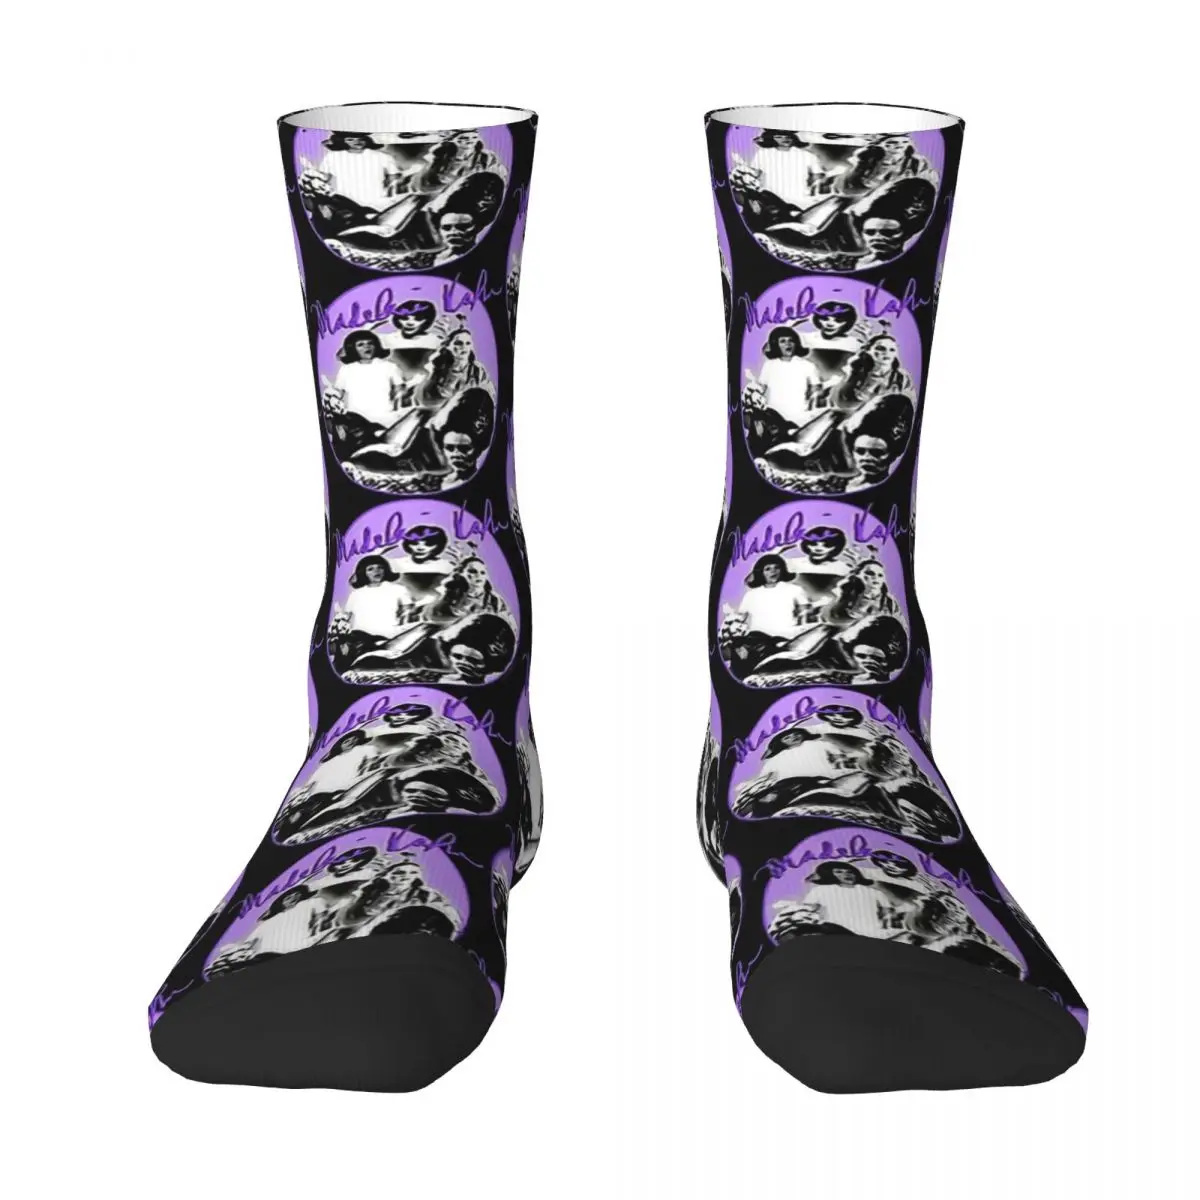 

MadelineKahn Frankenstein унисекс Зимние носки для походов счастливые носки уличный стиль сумасшедшие носки